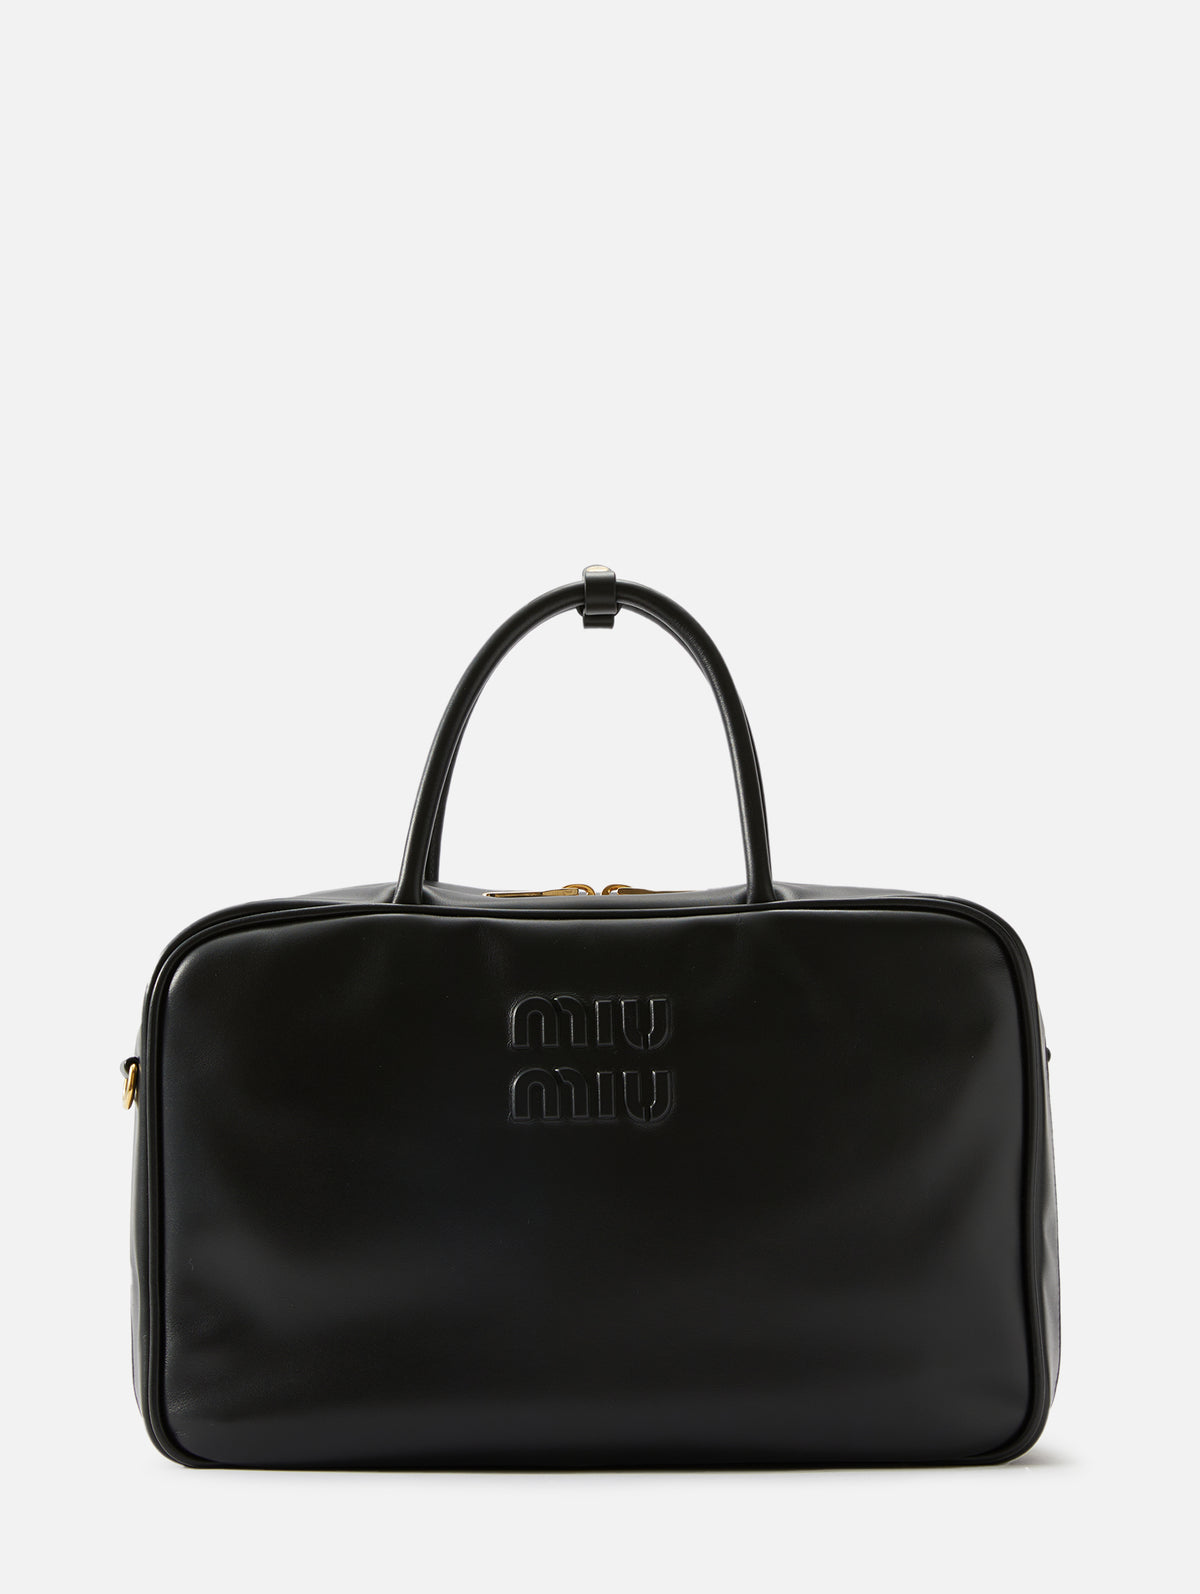 logo-embossed leather tote bag, Miu Miu